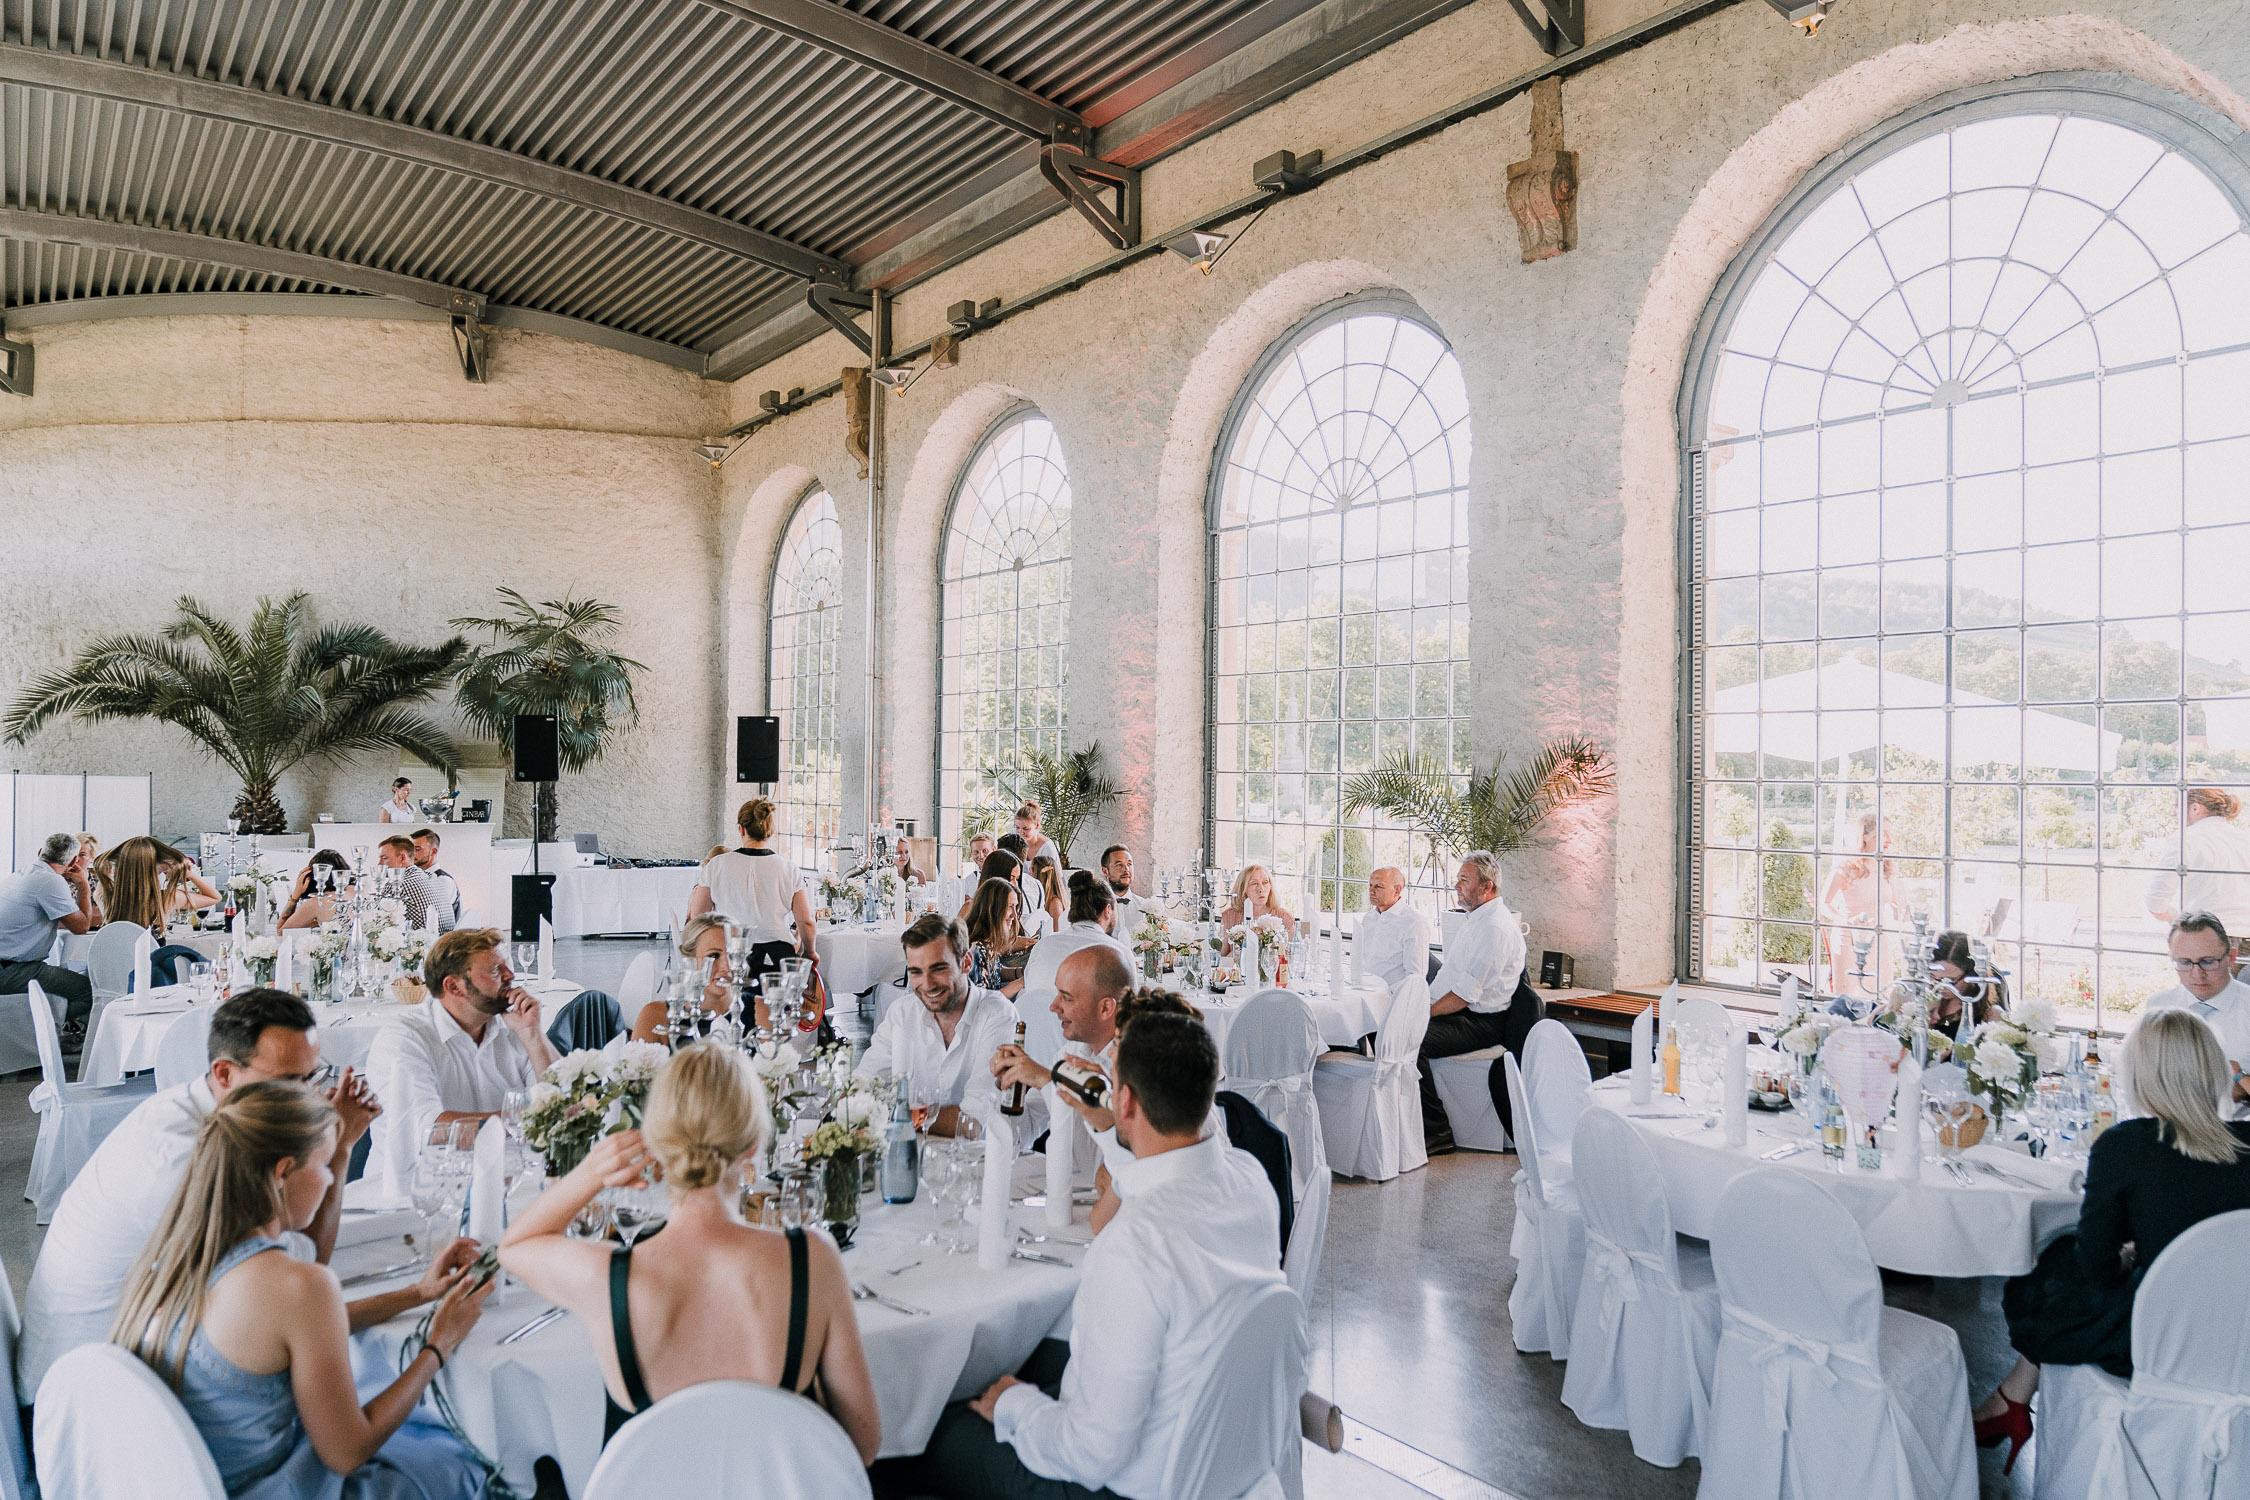 Der Hochzeitsfotograf Axel Link zeigt Bilder, die er als Fotograf auf einer Hochzeit im Schloss Weikersheim gemacht hat. Braut und Bräutigam mit Gäste bei der Trauung und Hochzeitsfeier.